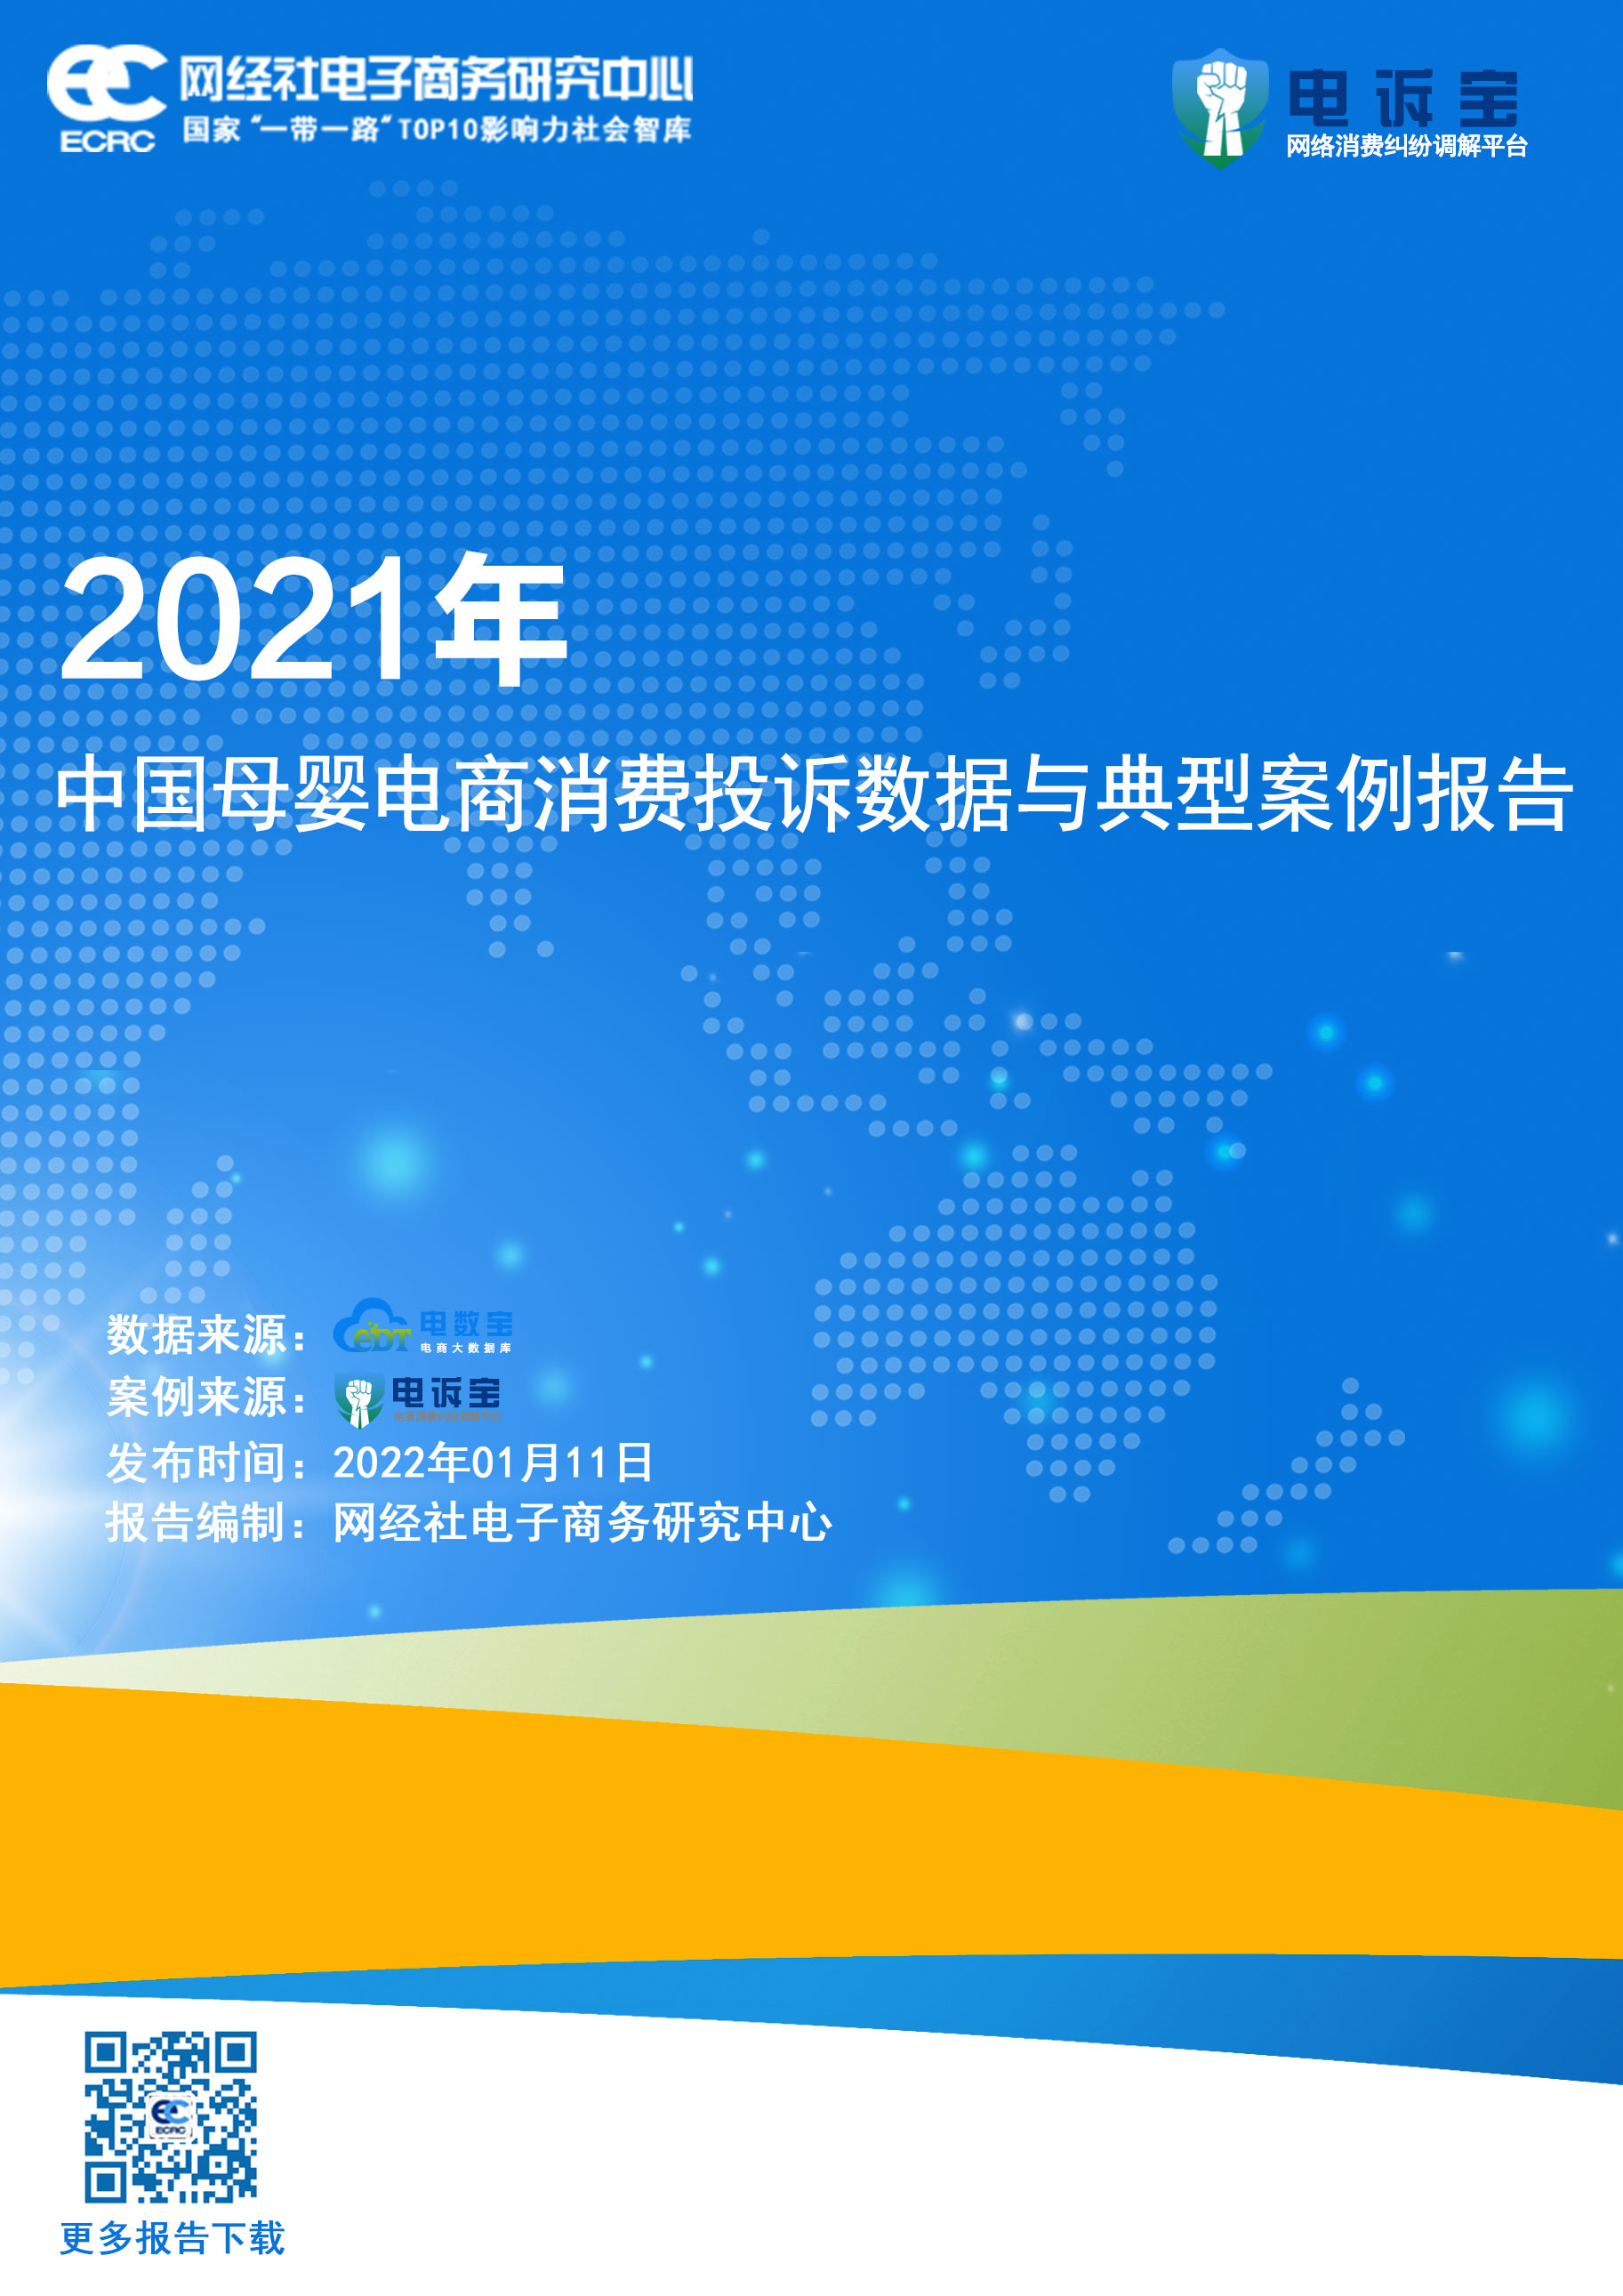 《2021年度中国母婴电商消费投诉数据与典型案例报告》.jpg